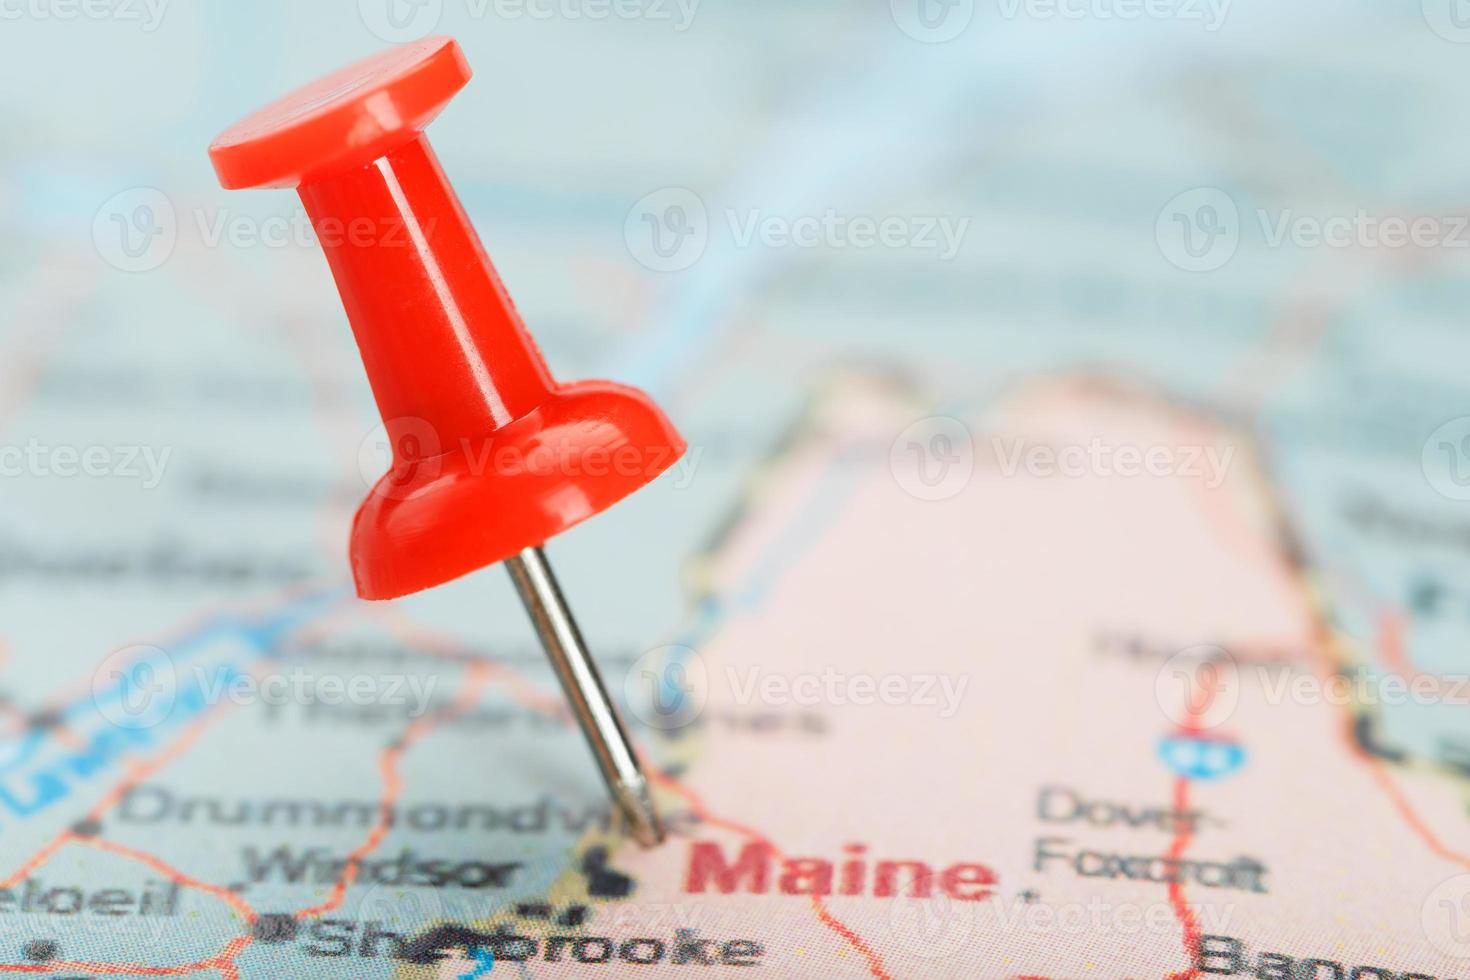 aguja clerical roja en un mapa de estados unidos, sur sur de maine y la capital augusta. cerrar mapa del sur sur de maine con tachuela roja foto